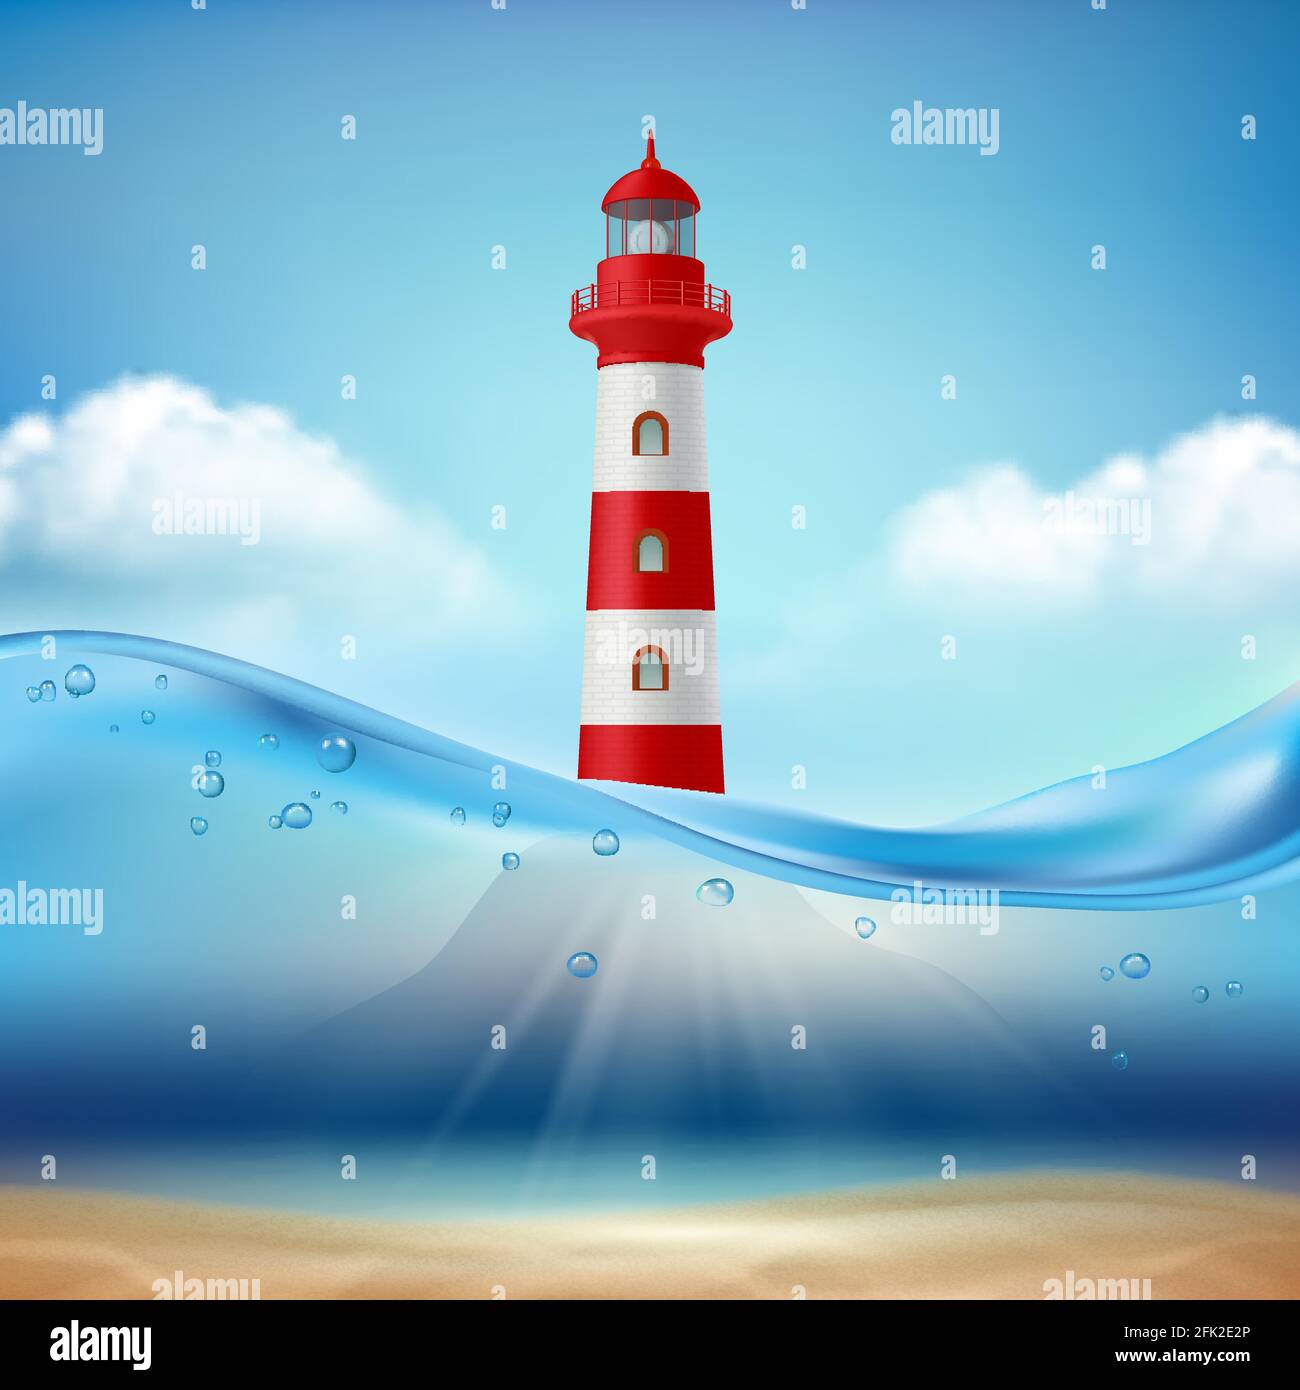 Leuchtturm. Marine oder Ozean Hintergrund Wasserwelle und Lichtstrahl Lampe für sichere Schifffahrt Vektor realistische Meereslandschaft Stock Vektor